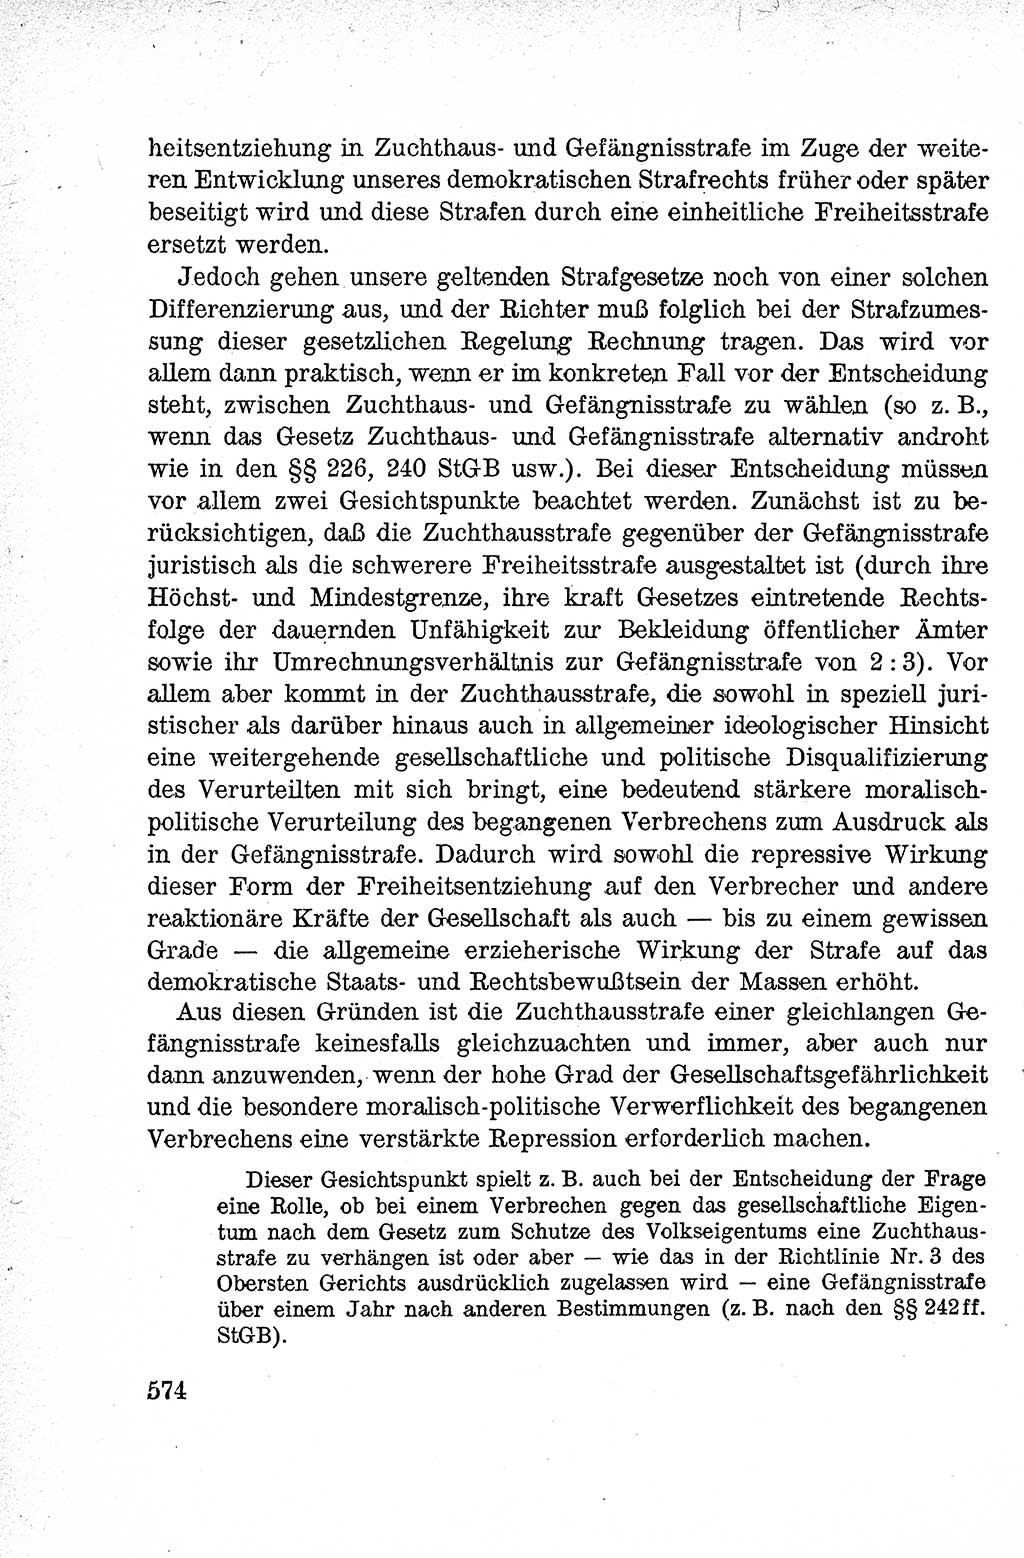 Lehrbuch des Strafrechts der Deutschen Demokratischen Republik (DDR), Allgemeiner Teil 1959, Seite 574 (Lb. Strafr. DDR AT 1959, S. 574)